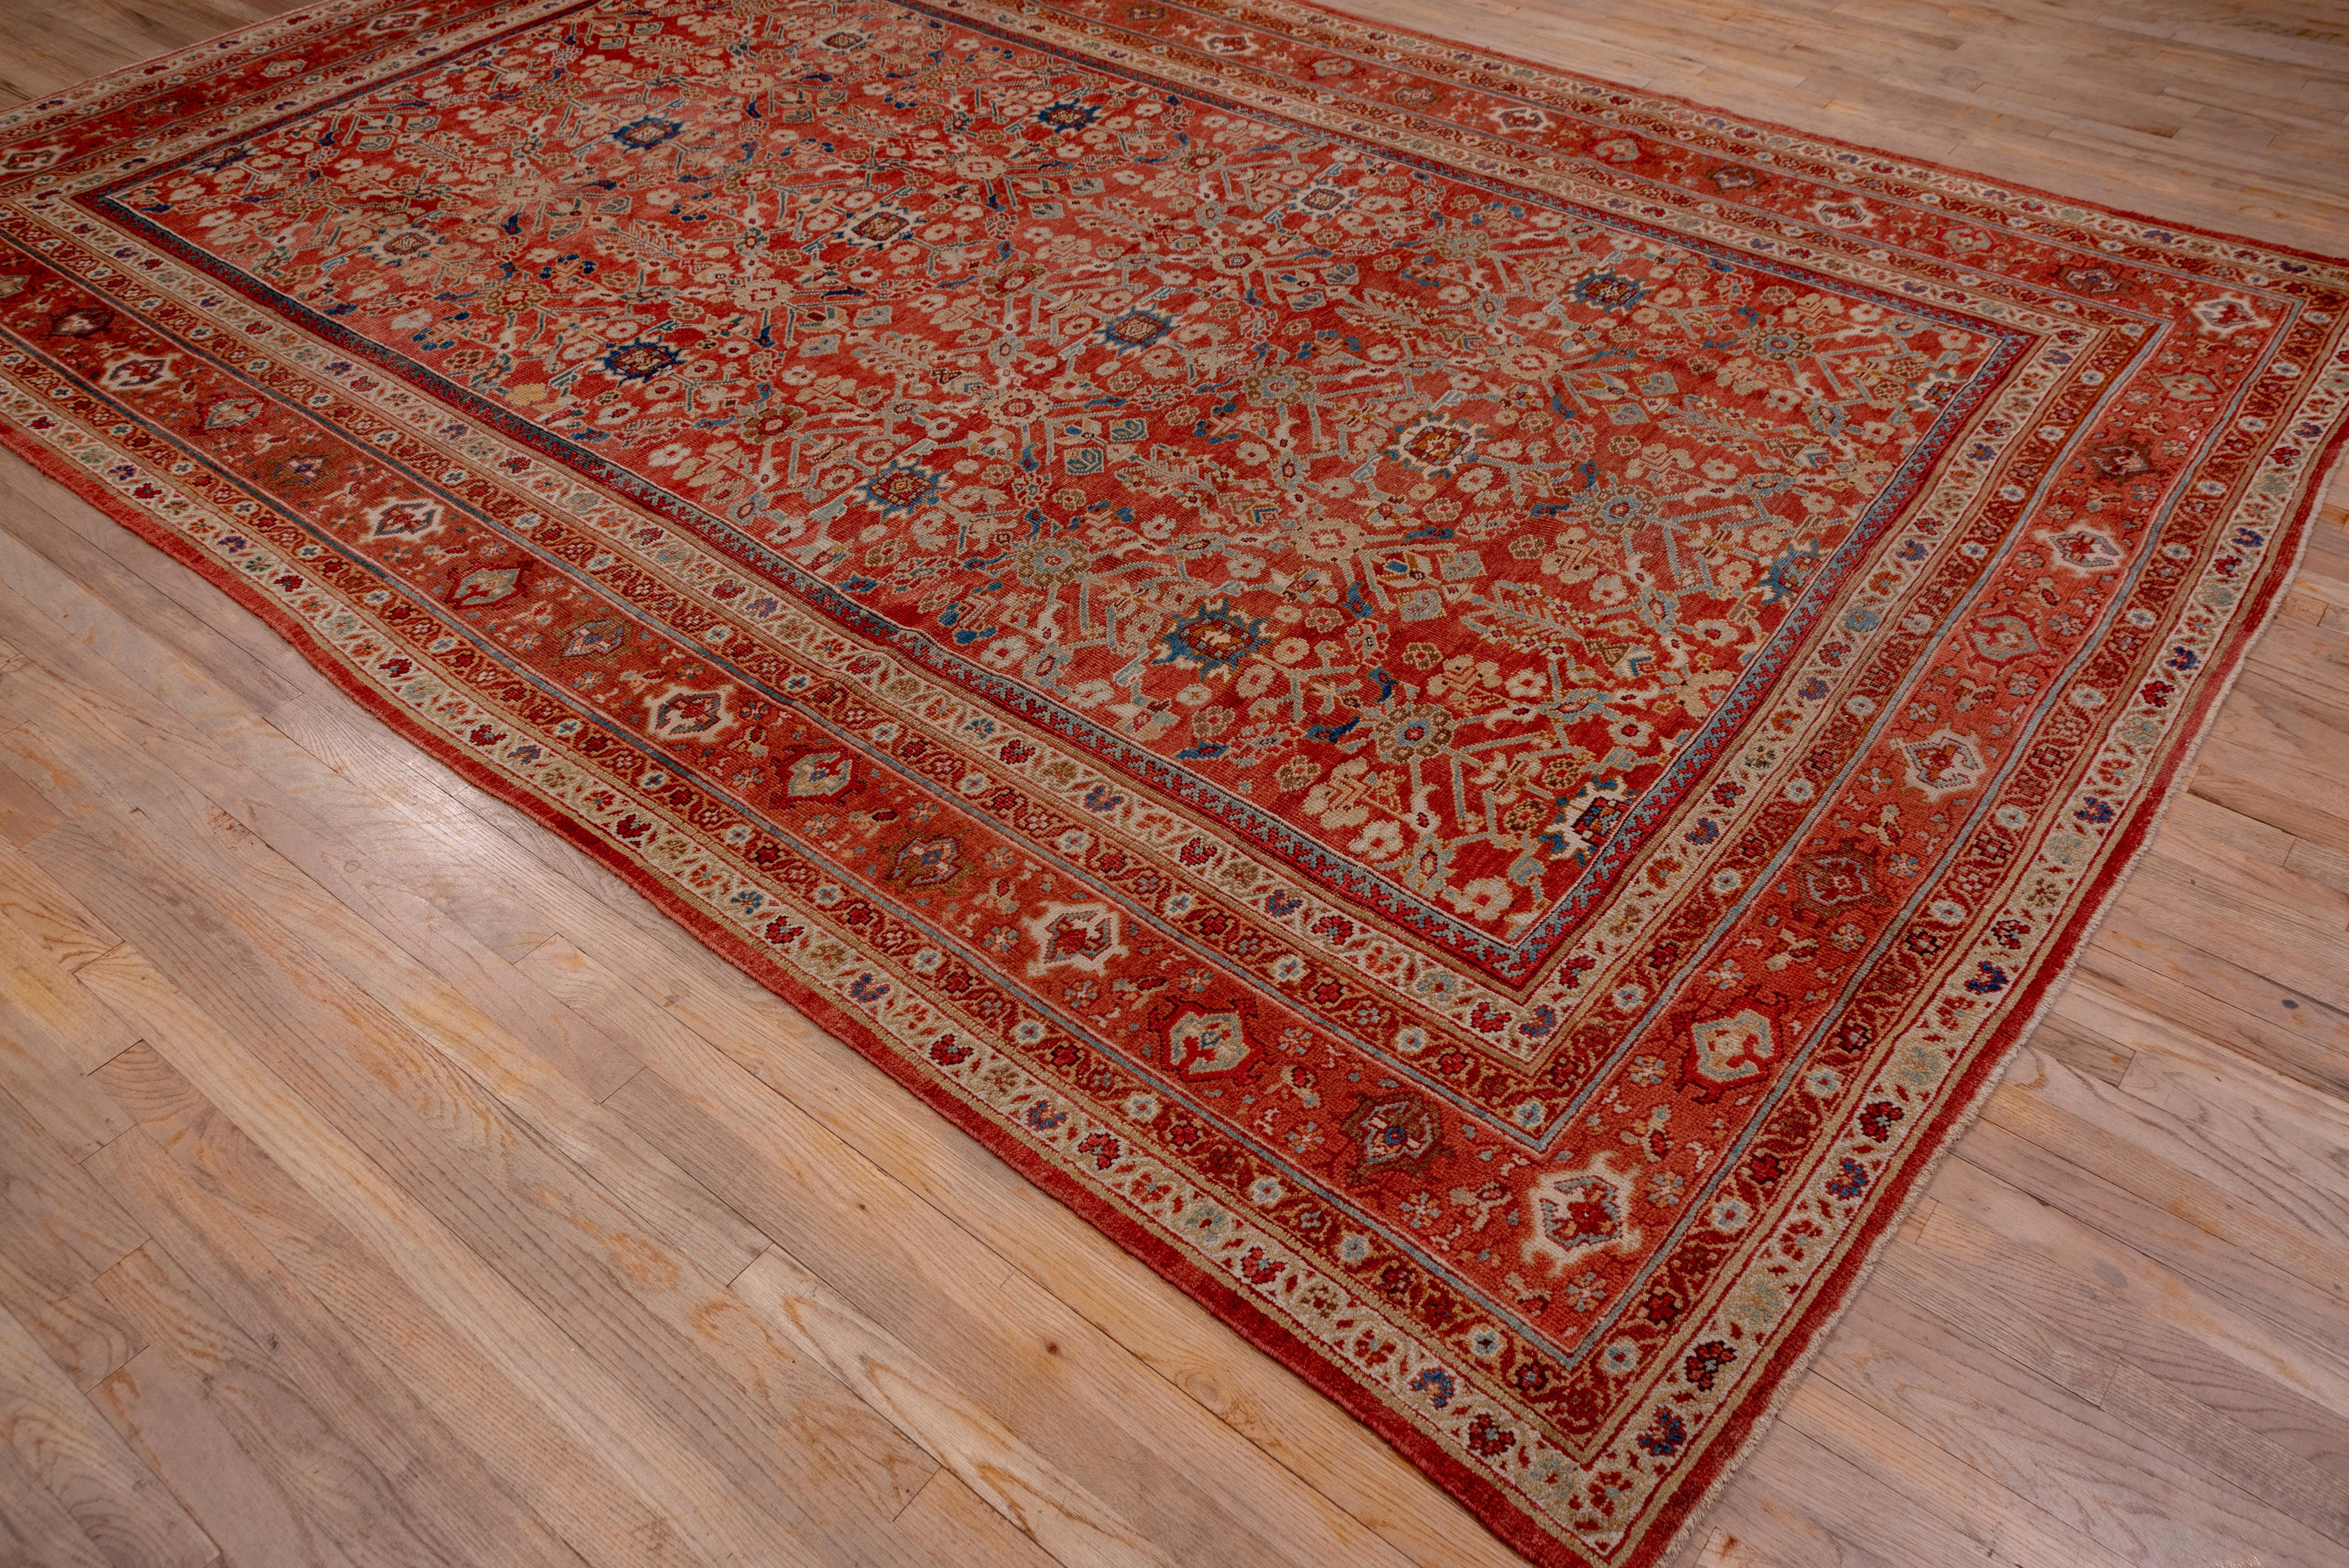 Tribal Antique Mahal Carpet, Soft Palette For Sale 2